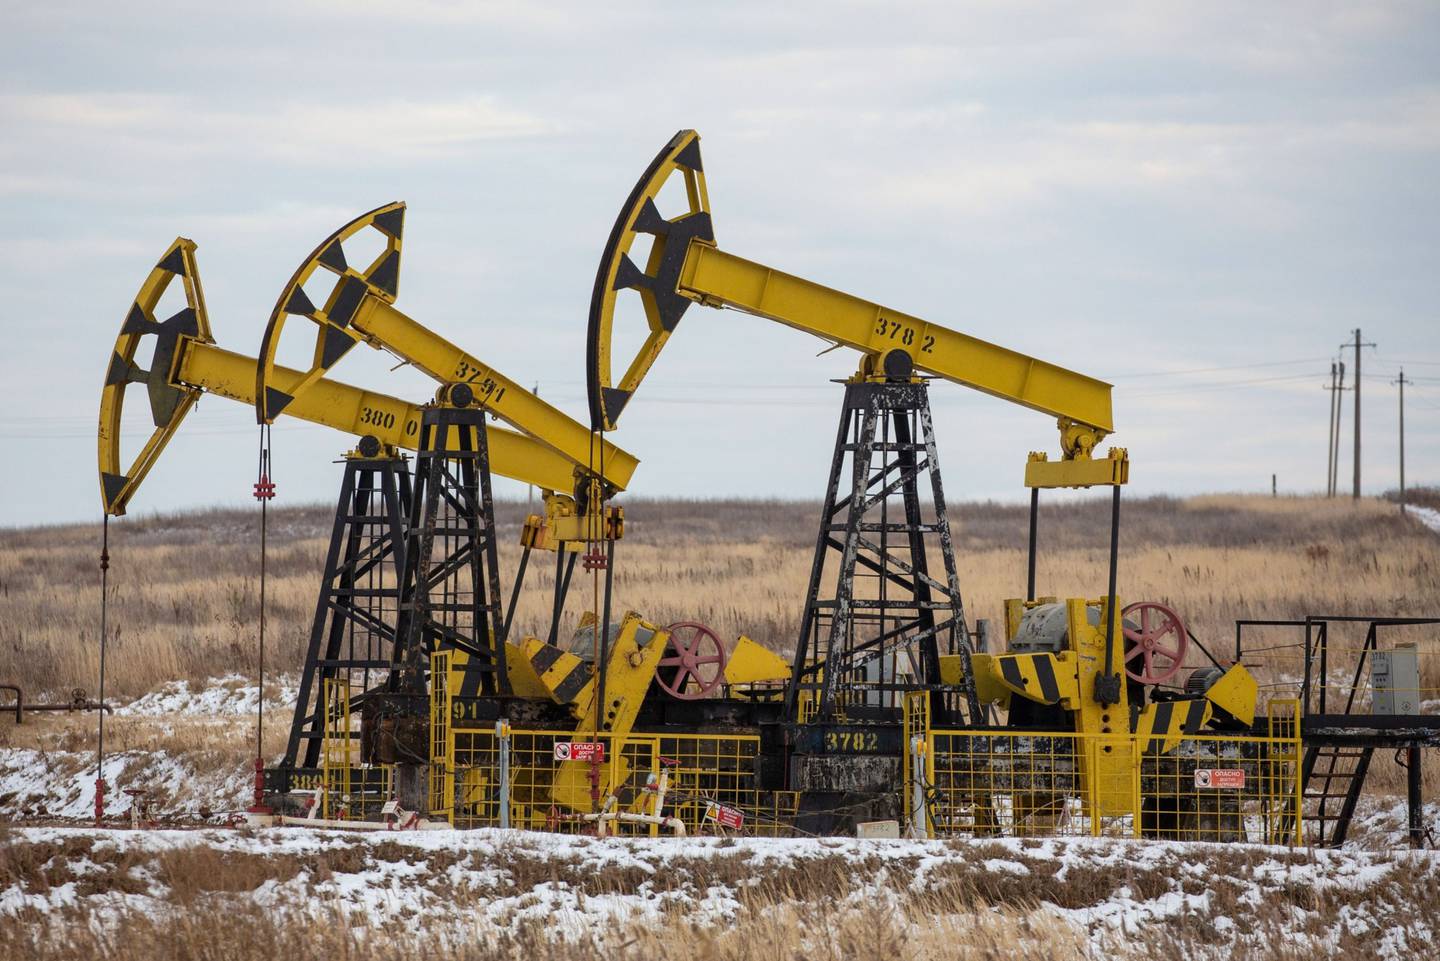 Gatos de bombeo de petróleo, en un yacimiento petrolífero de Rosneft Oil Co. cerca del pueblo de Sokolovka, en la República de Udmurt, Rusia, el viernes 20 de noviembre de 2020.